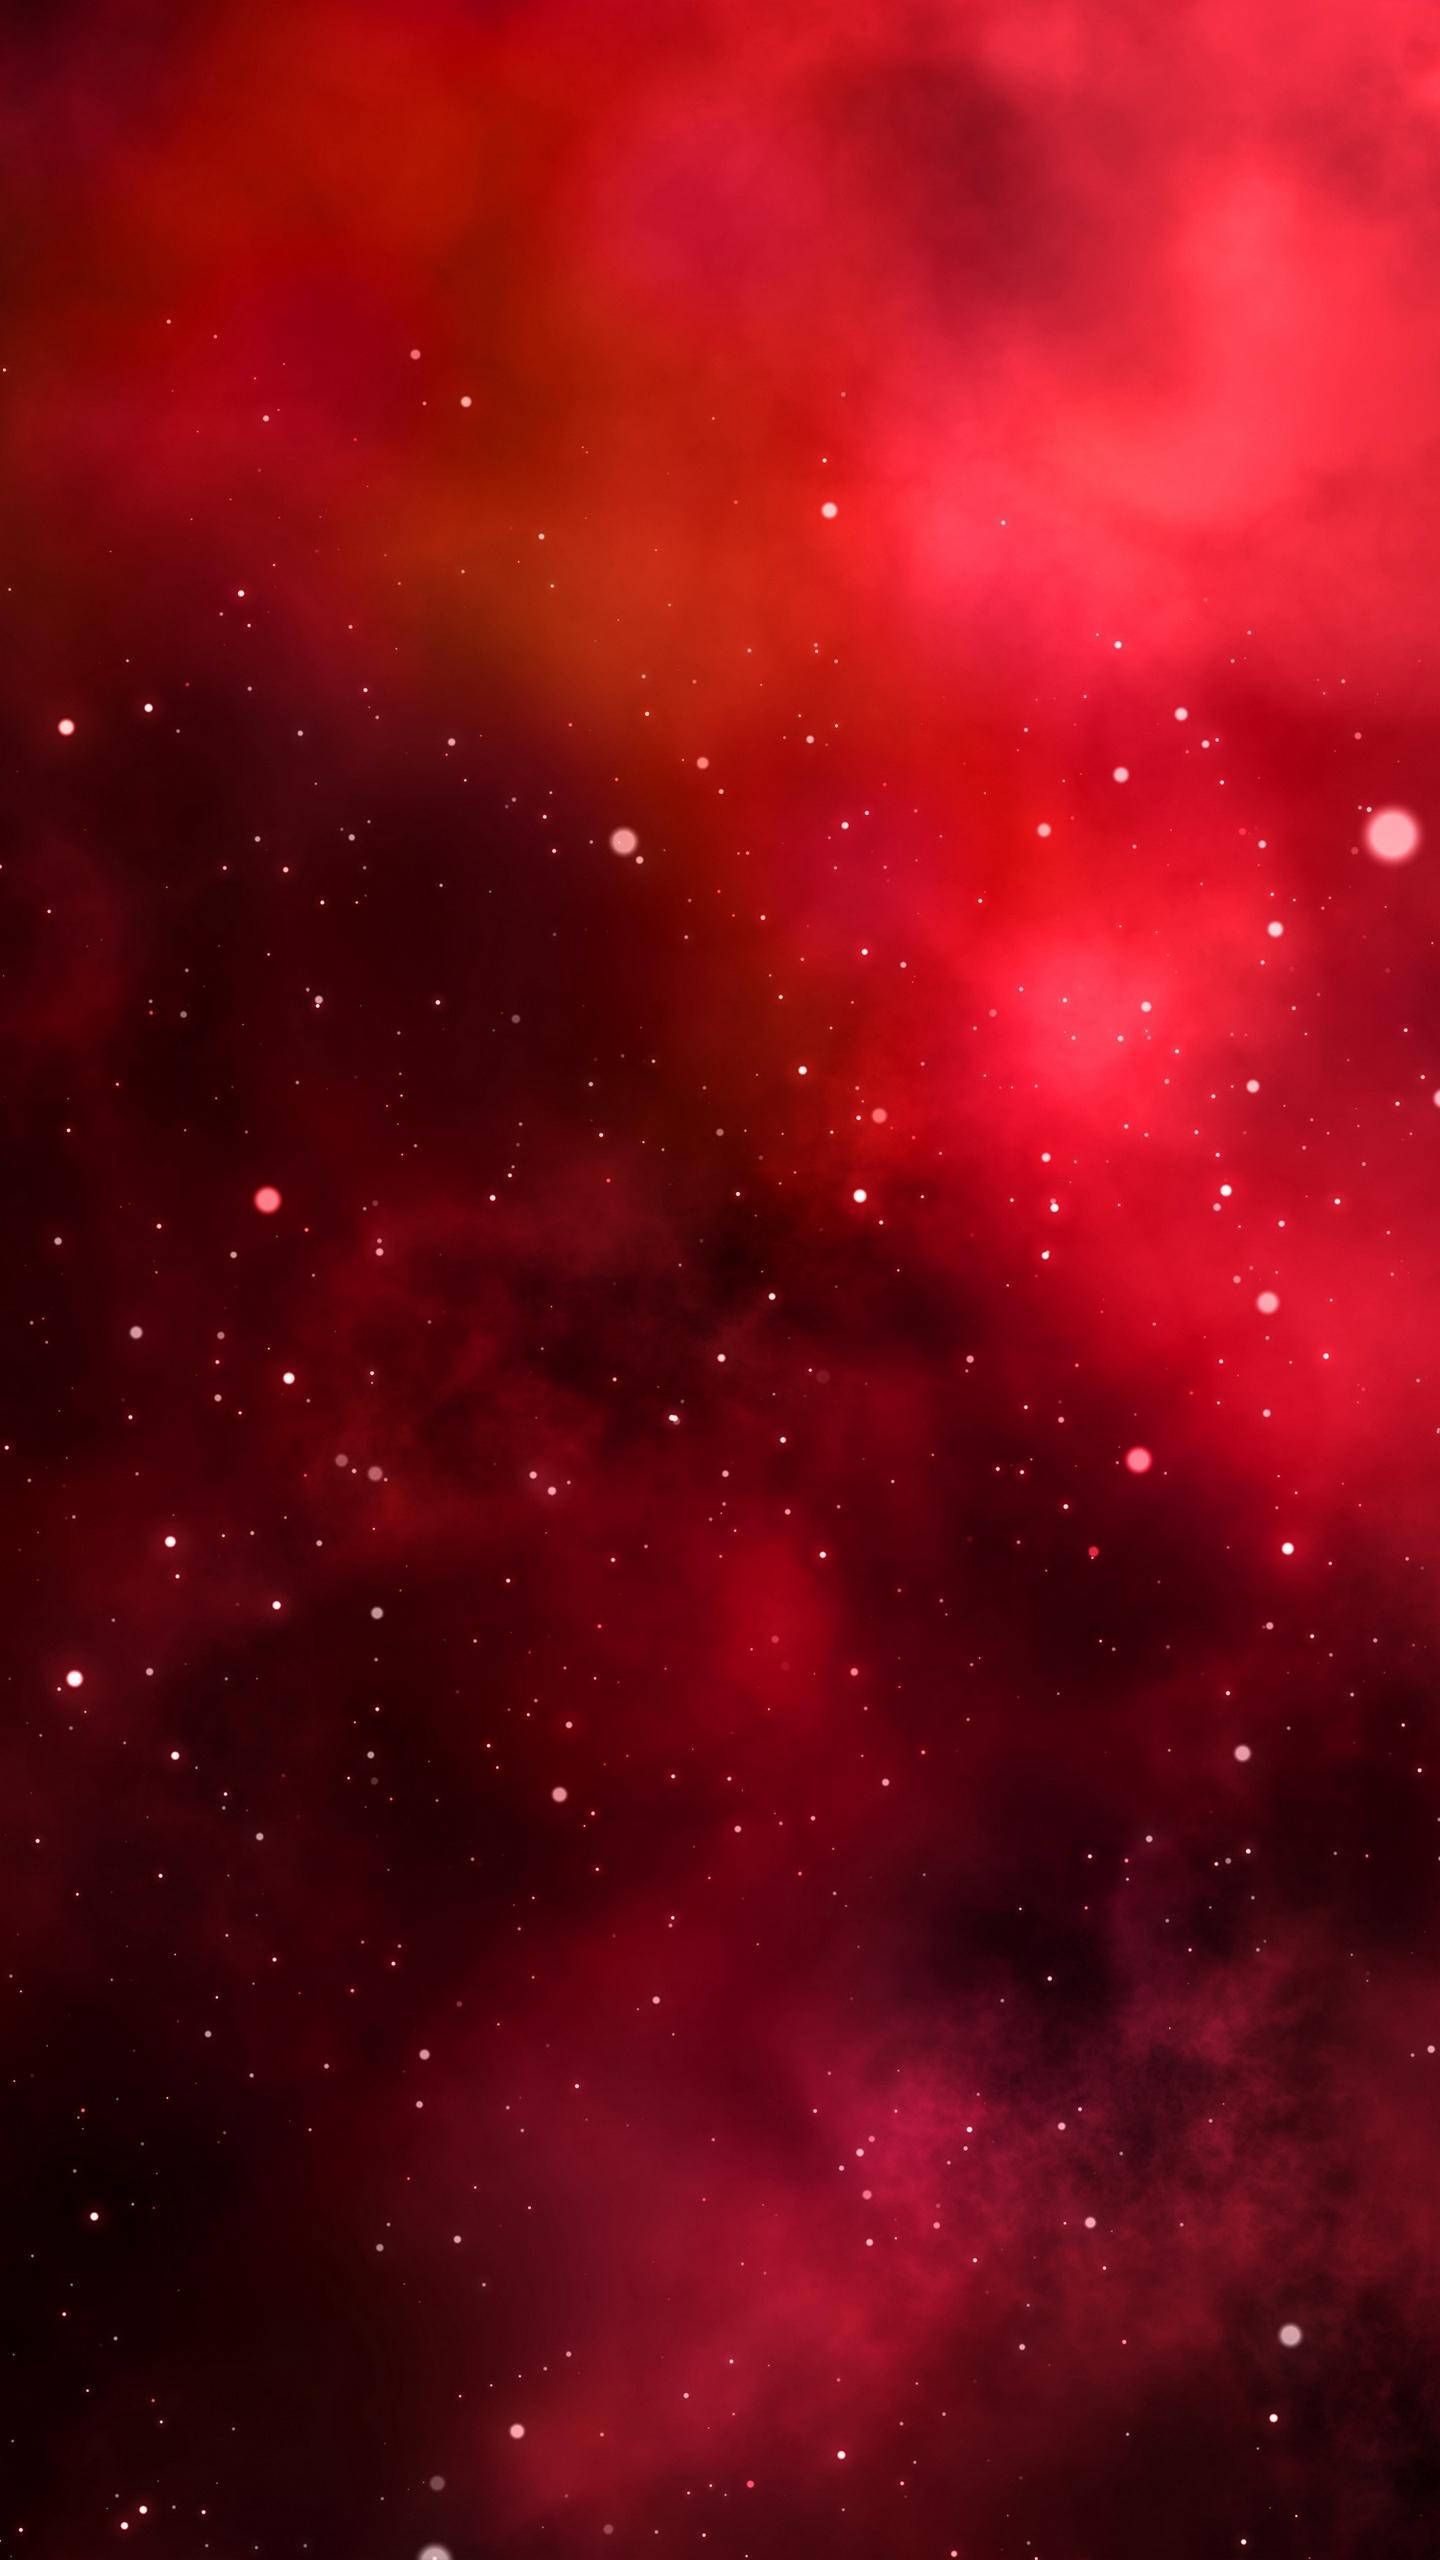 Tải hình nền iPhone Galaxy In Red Wallpaper để tạo nên một màn hình đầy sắc màu với sự kết hợp tinh tế giữa đen, đỏ và các tông màu khác. Hãy xem ảnh liên quan để thấy màn hình điện thoại của bạn sáng lên như những ngôi sao trên bầu trời đêm.